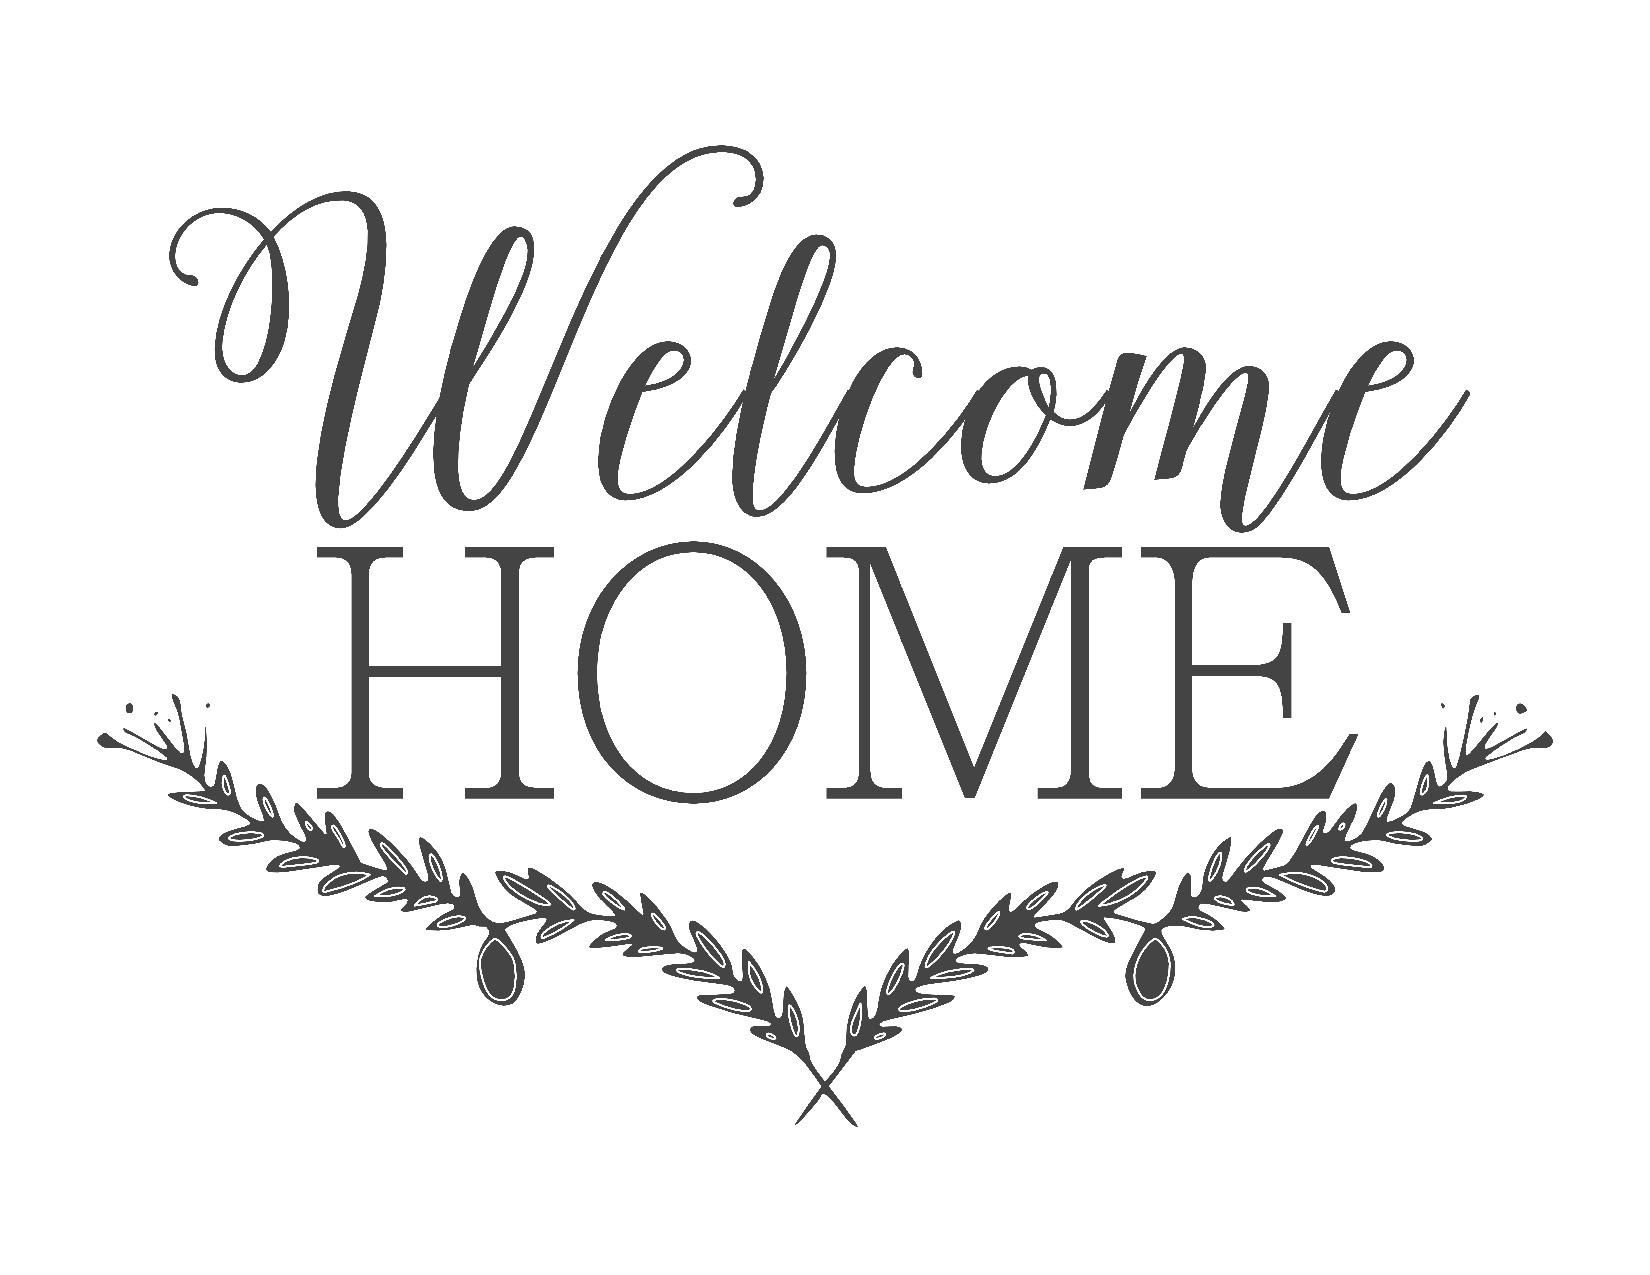 Farmhouse Free Printable Set-Gather-Choose Joy-Welcome Home | ~For - Free Printable Welcome Cards